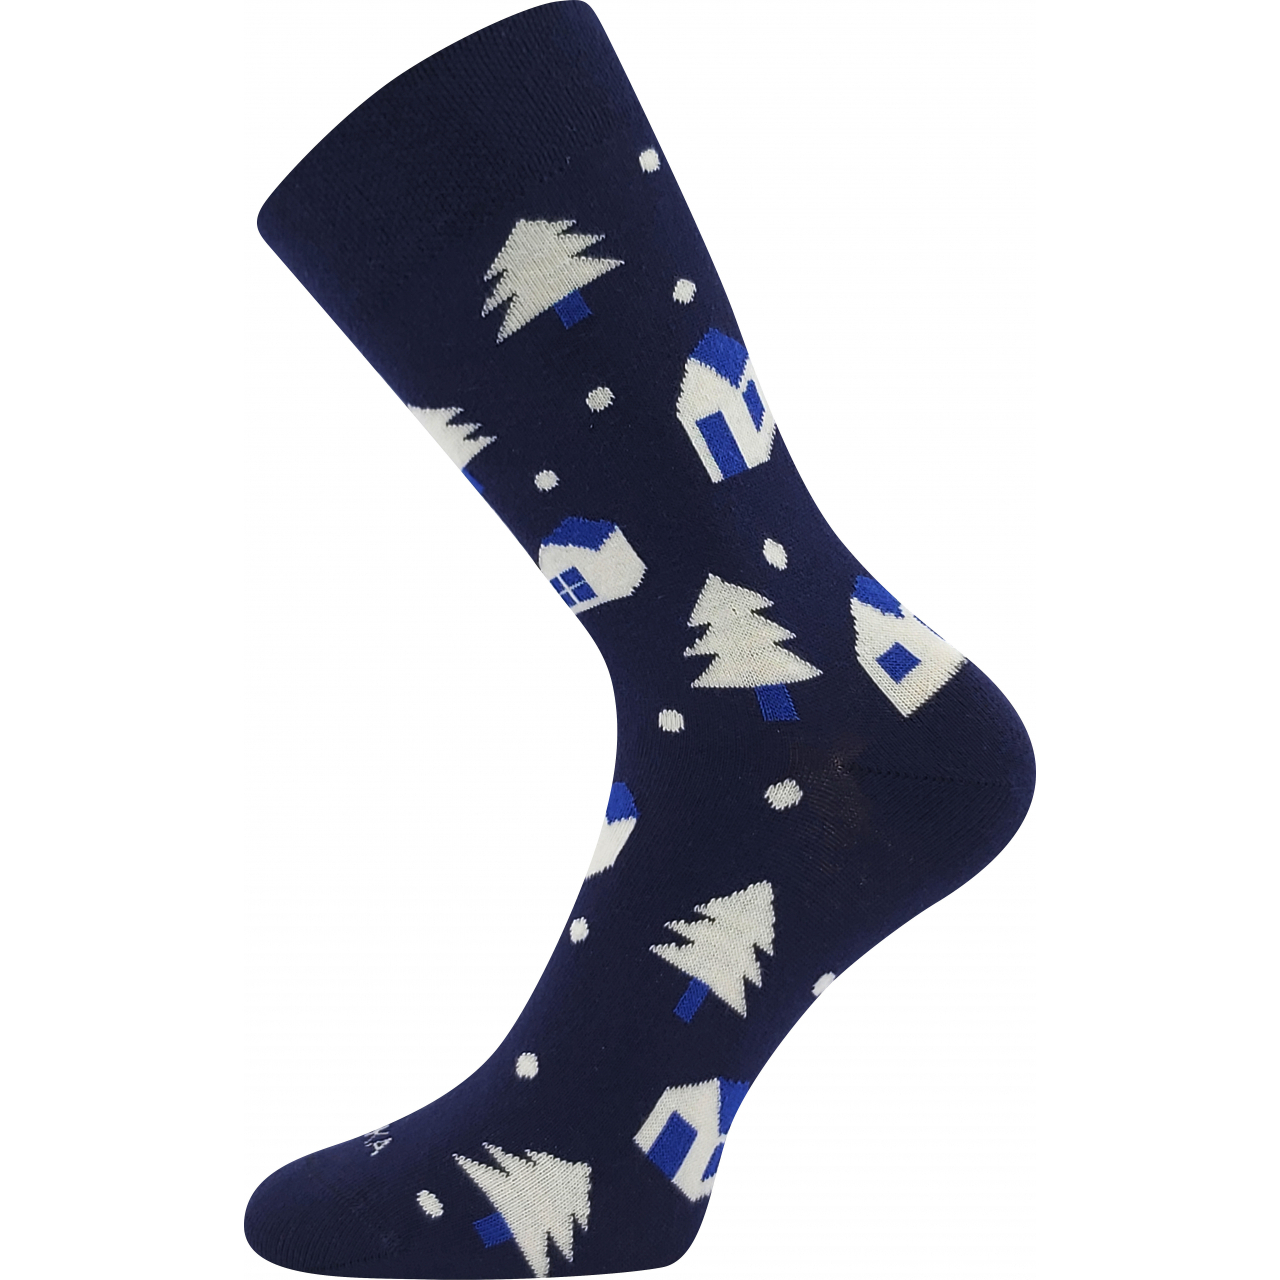 Ponožky slabé unisex Lonka Damerry Vánoce - tmavě modré, 43-46